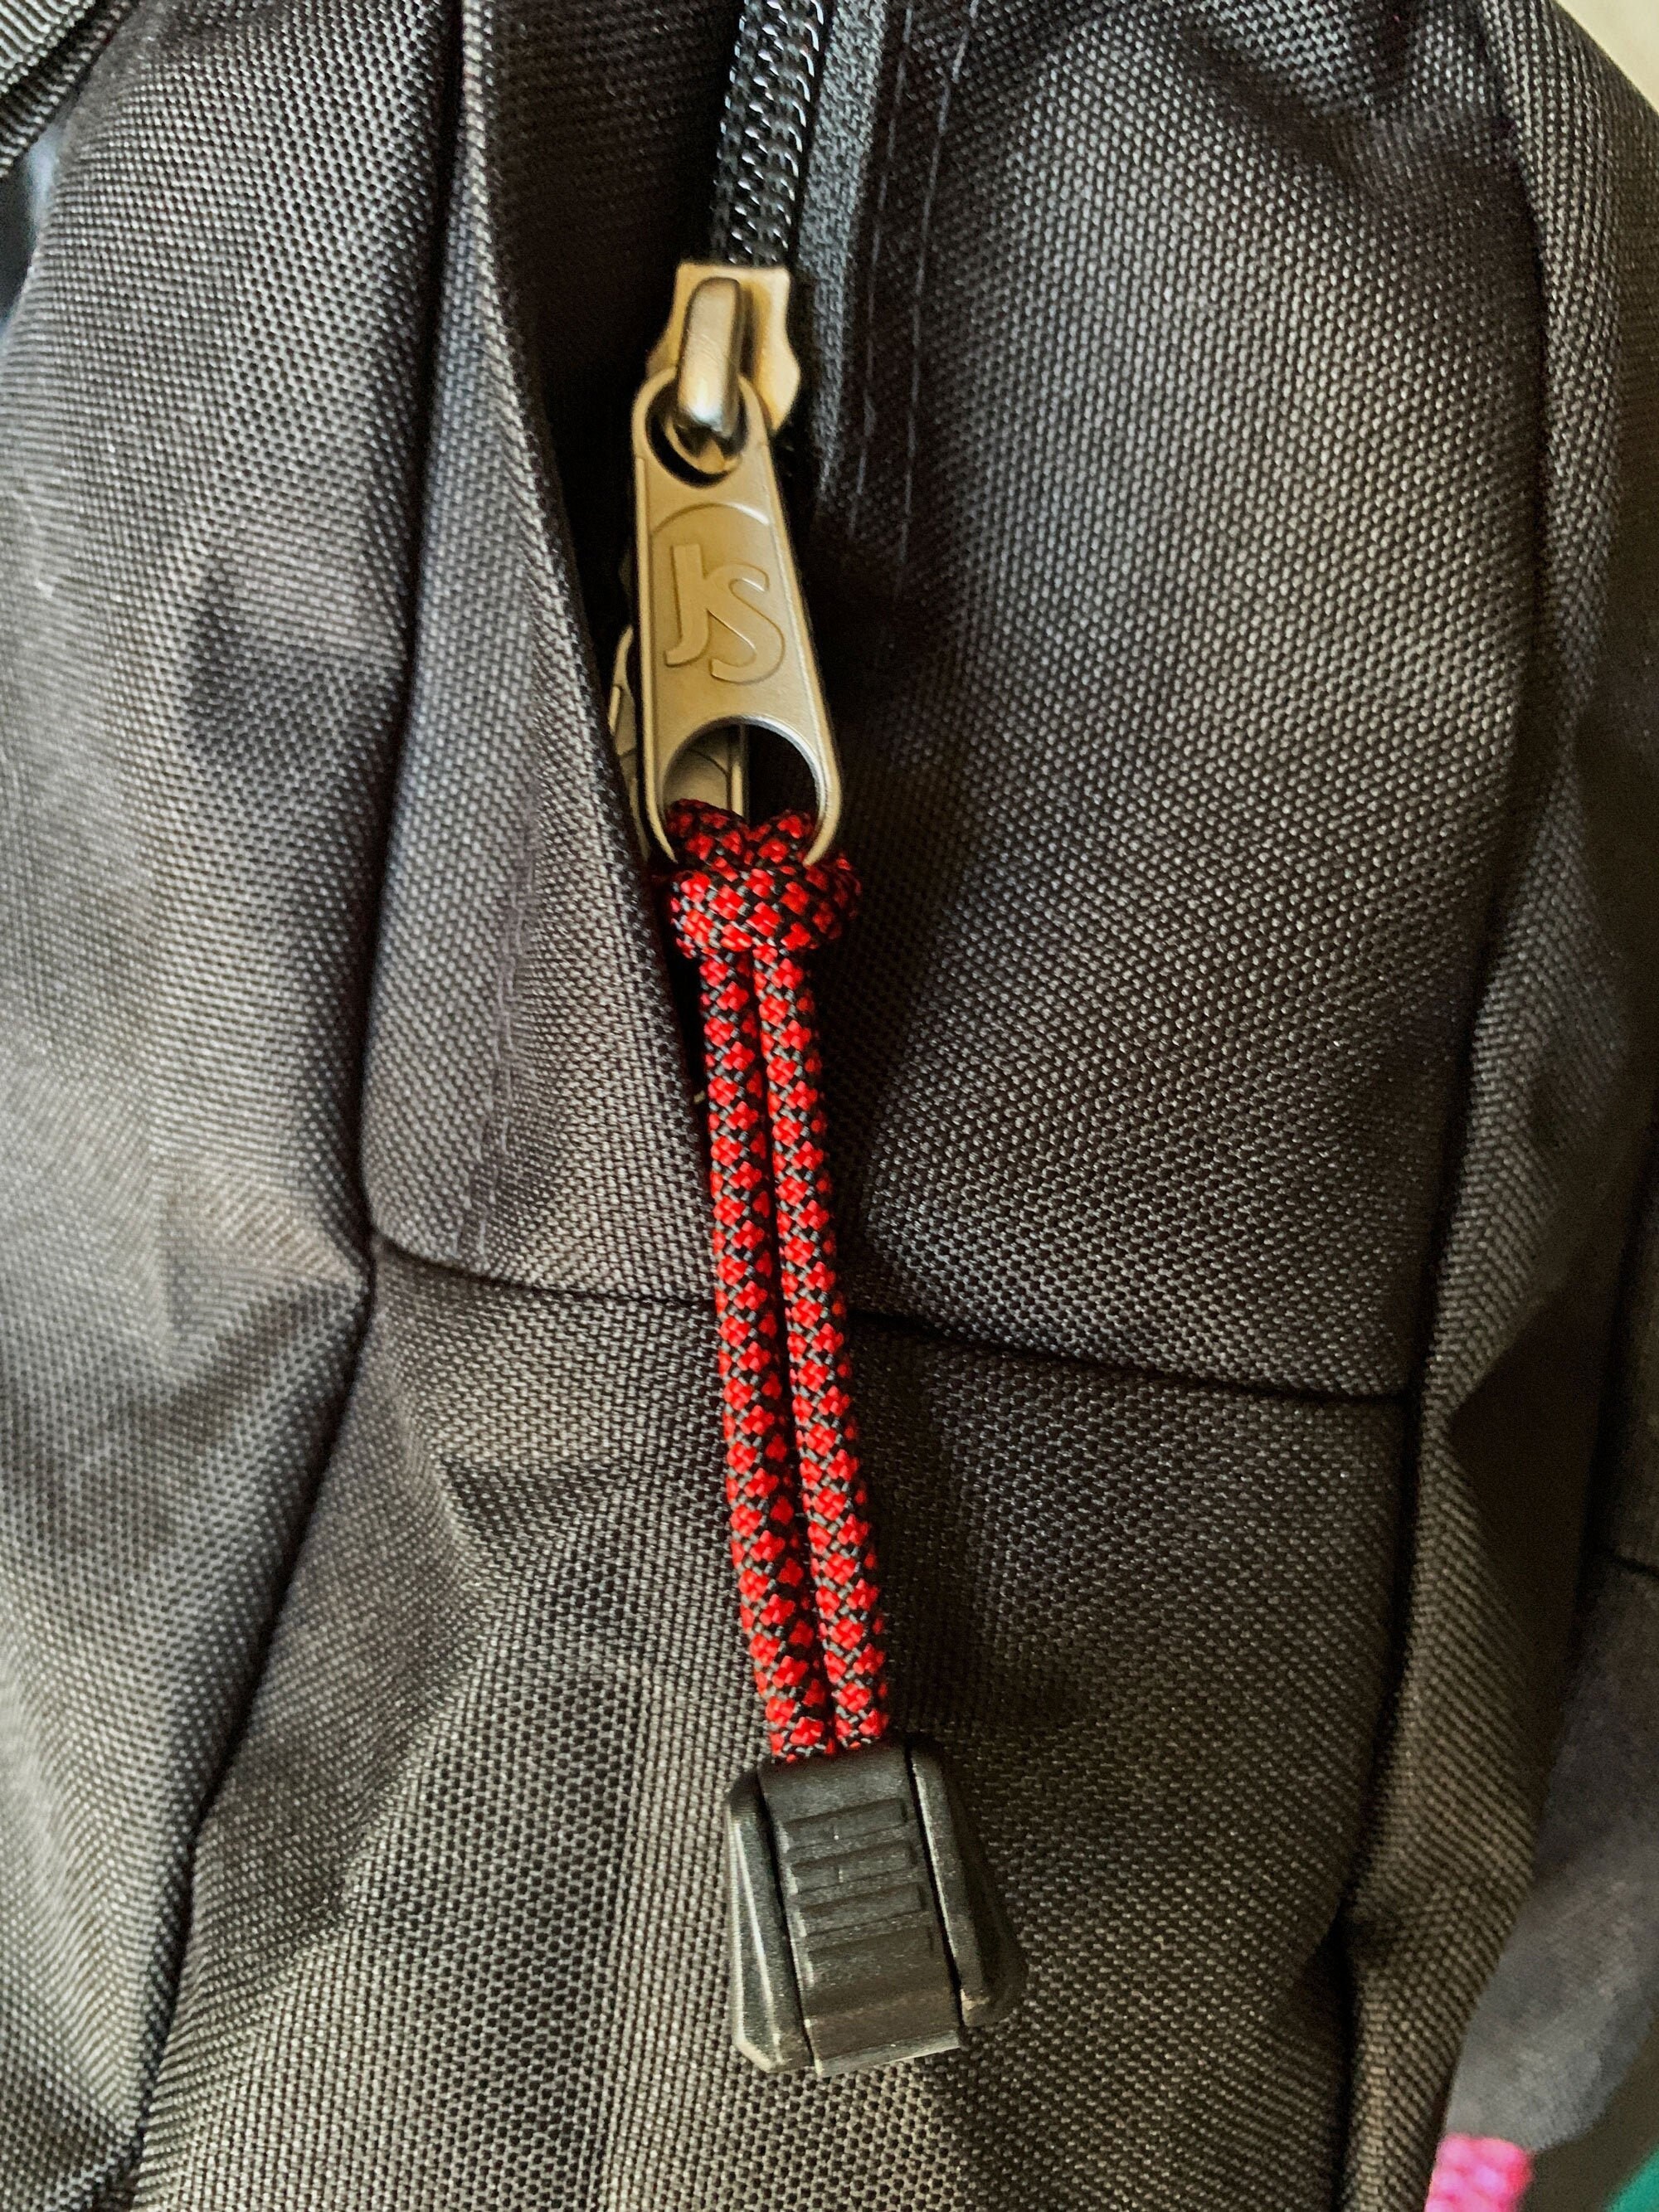 ZipperMend Fix and Repair Broken Zippers